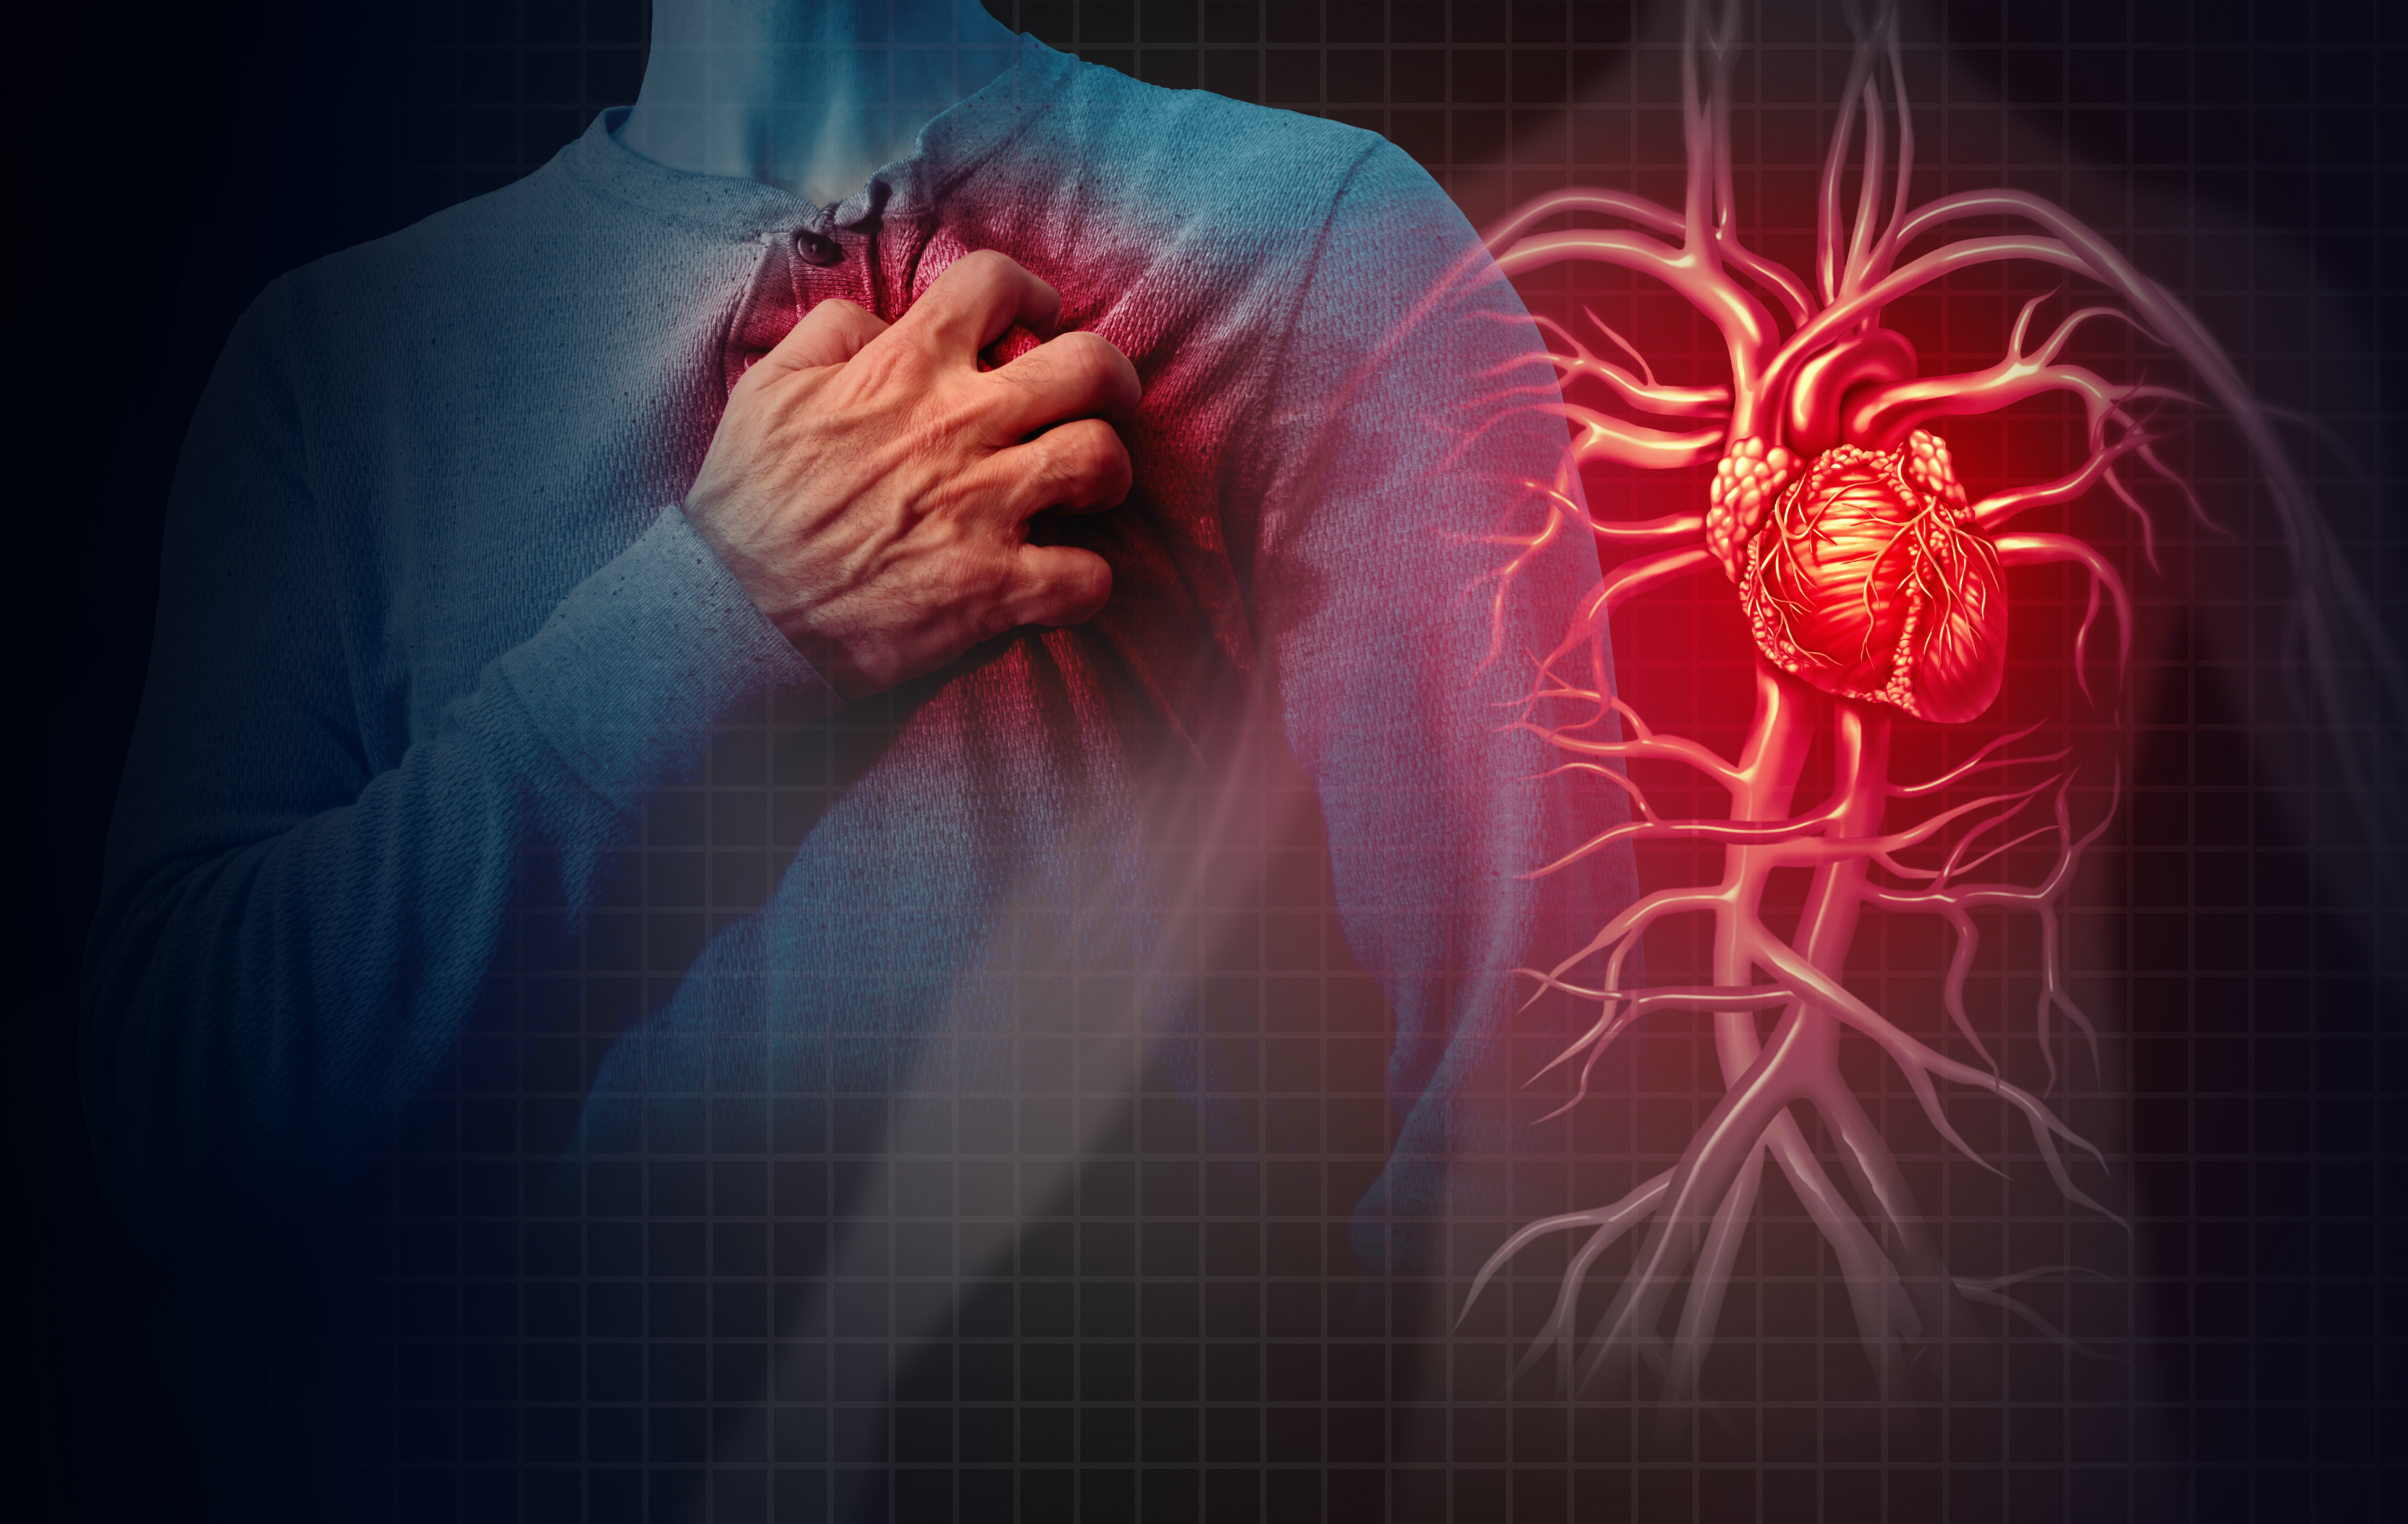 Heart：较低高敏心肌肌钙蛋白T浓度与远期预后的关系